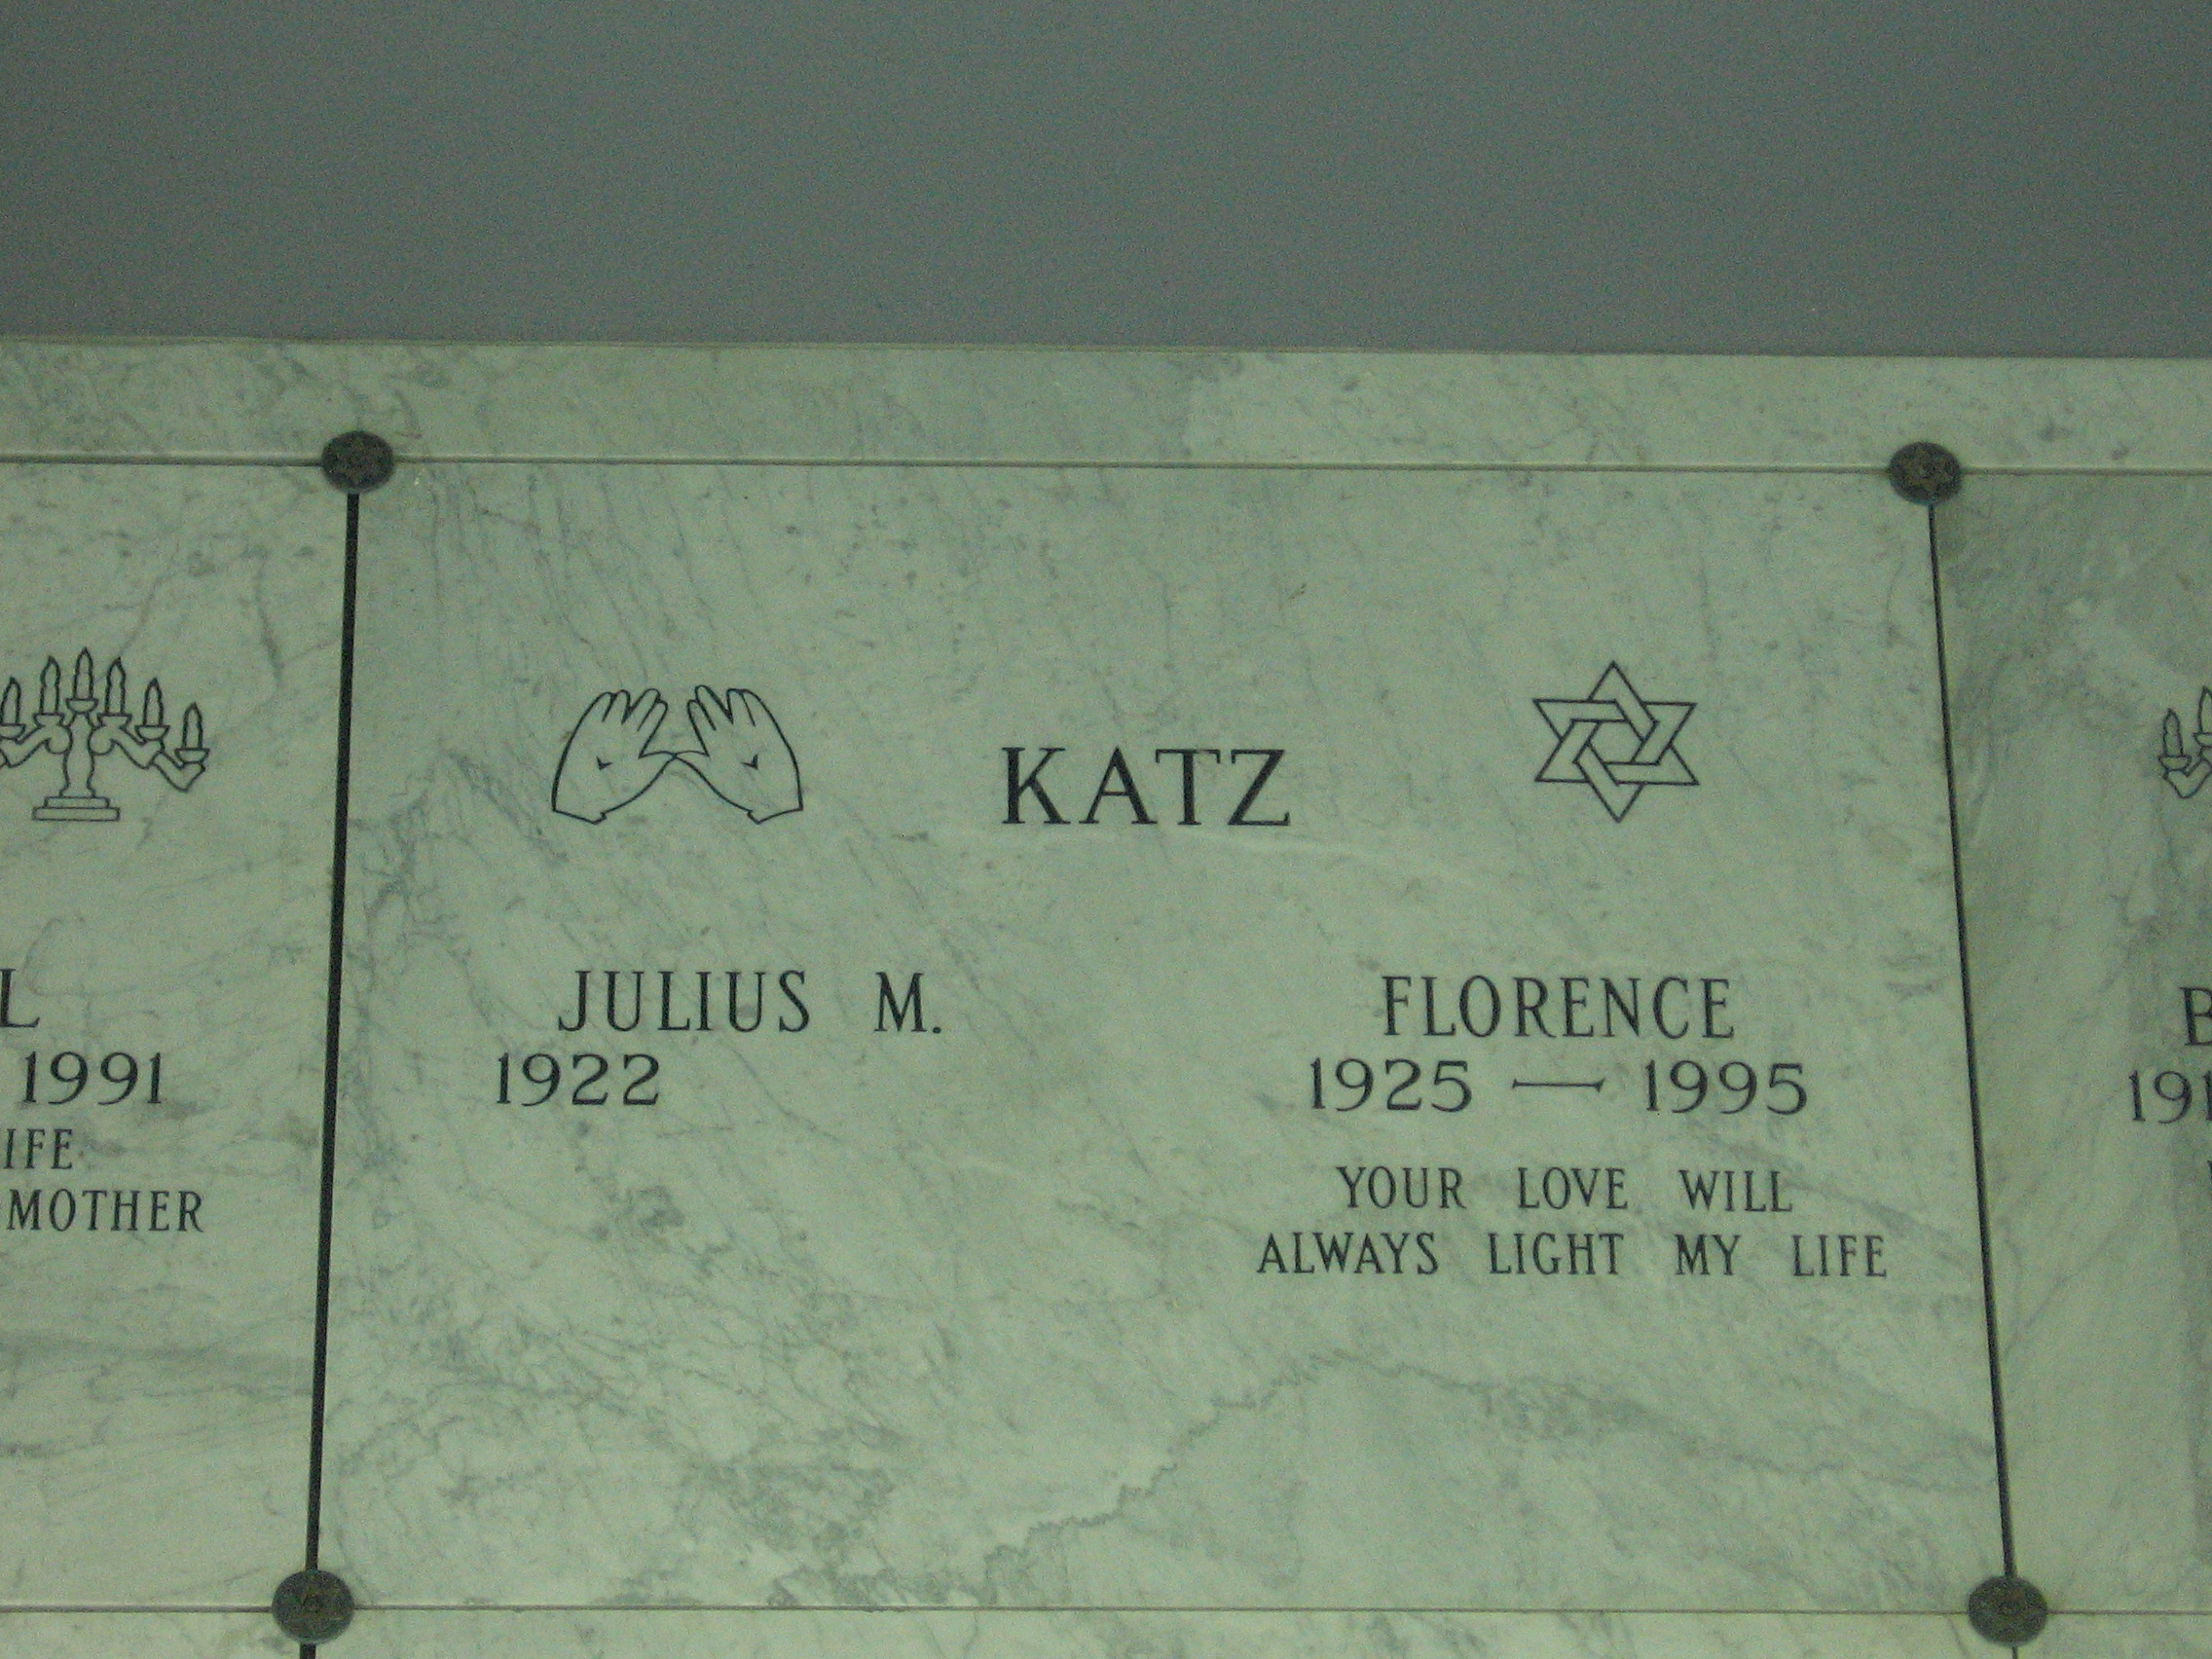 Julius M Katz